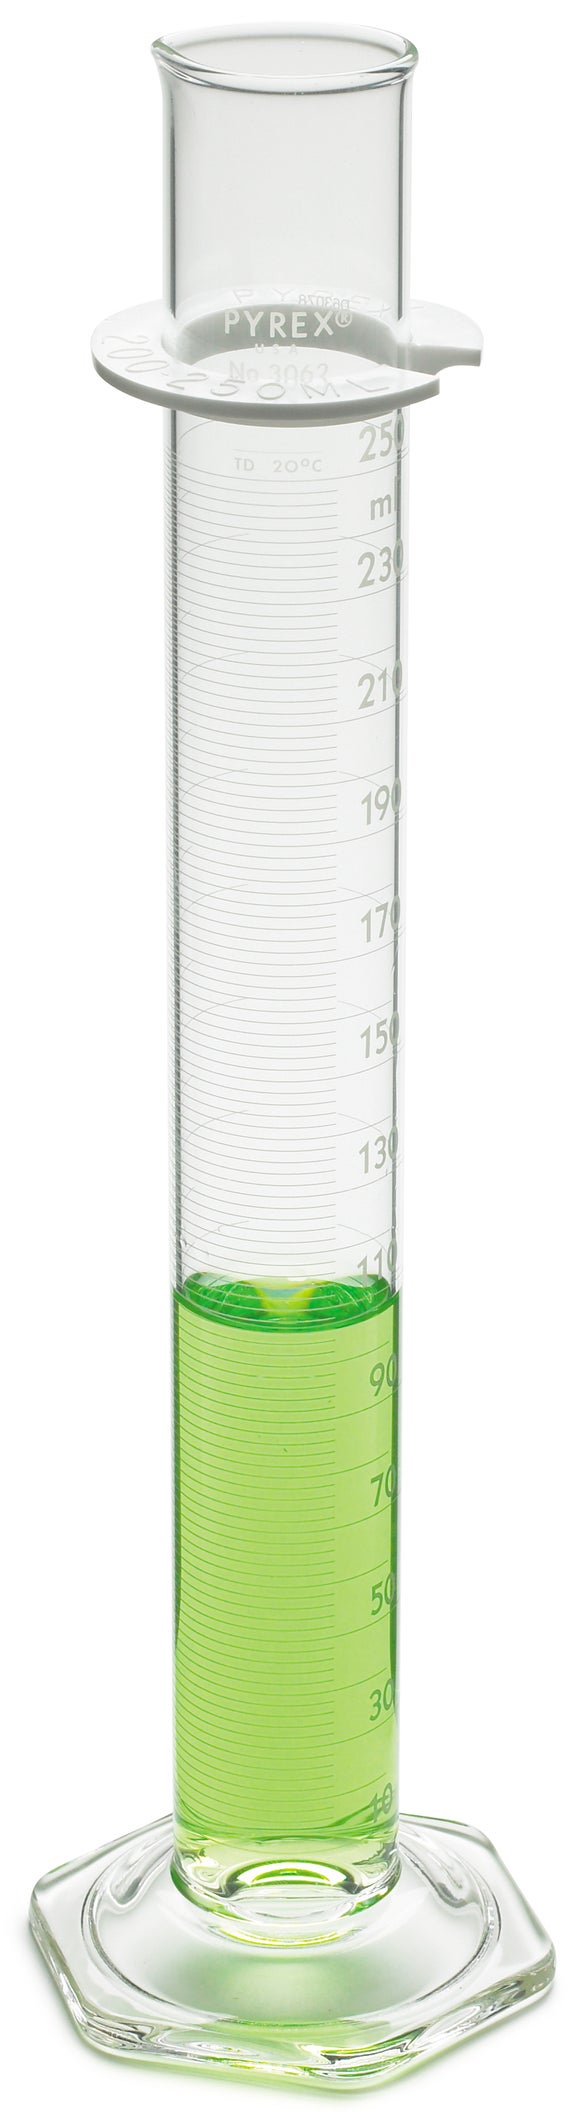 Zylinder, mit Skala, zertifiziert, 100 mL